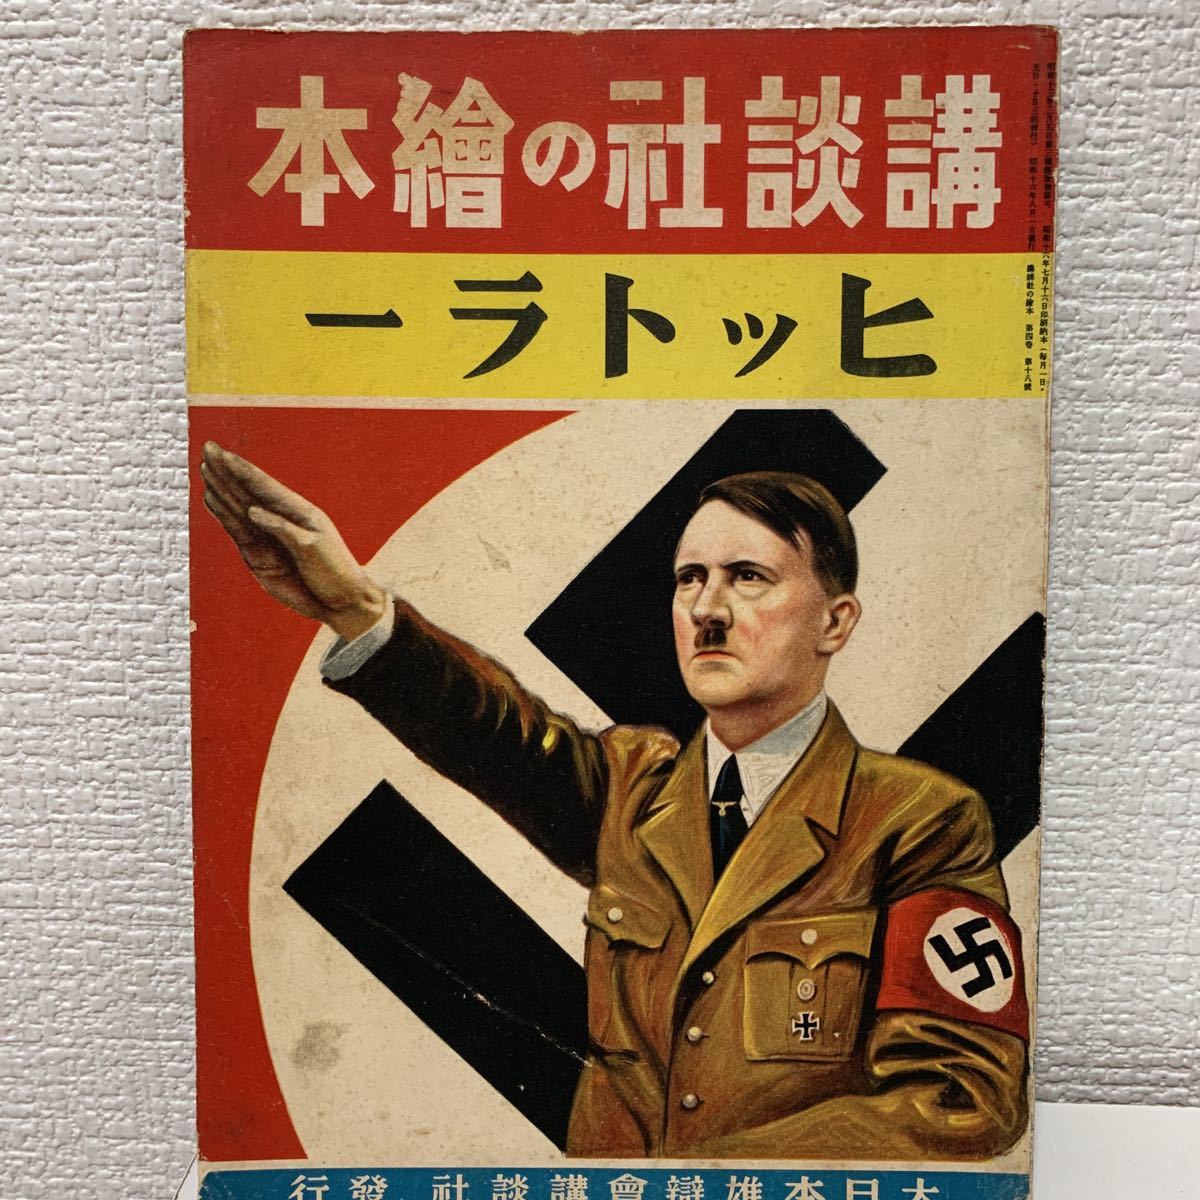 講談社の絵本ヒットラー 第二次世界大戦 日独伊三国同盟 ヒトラー